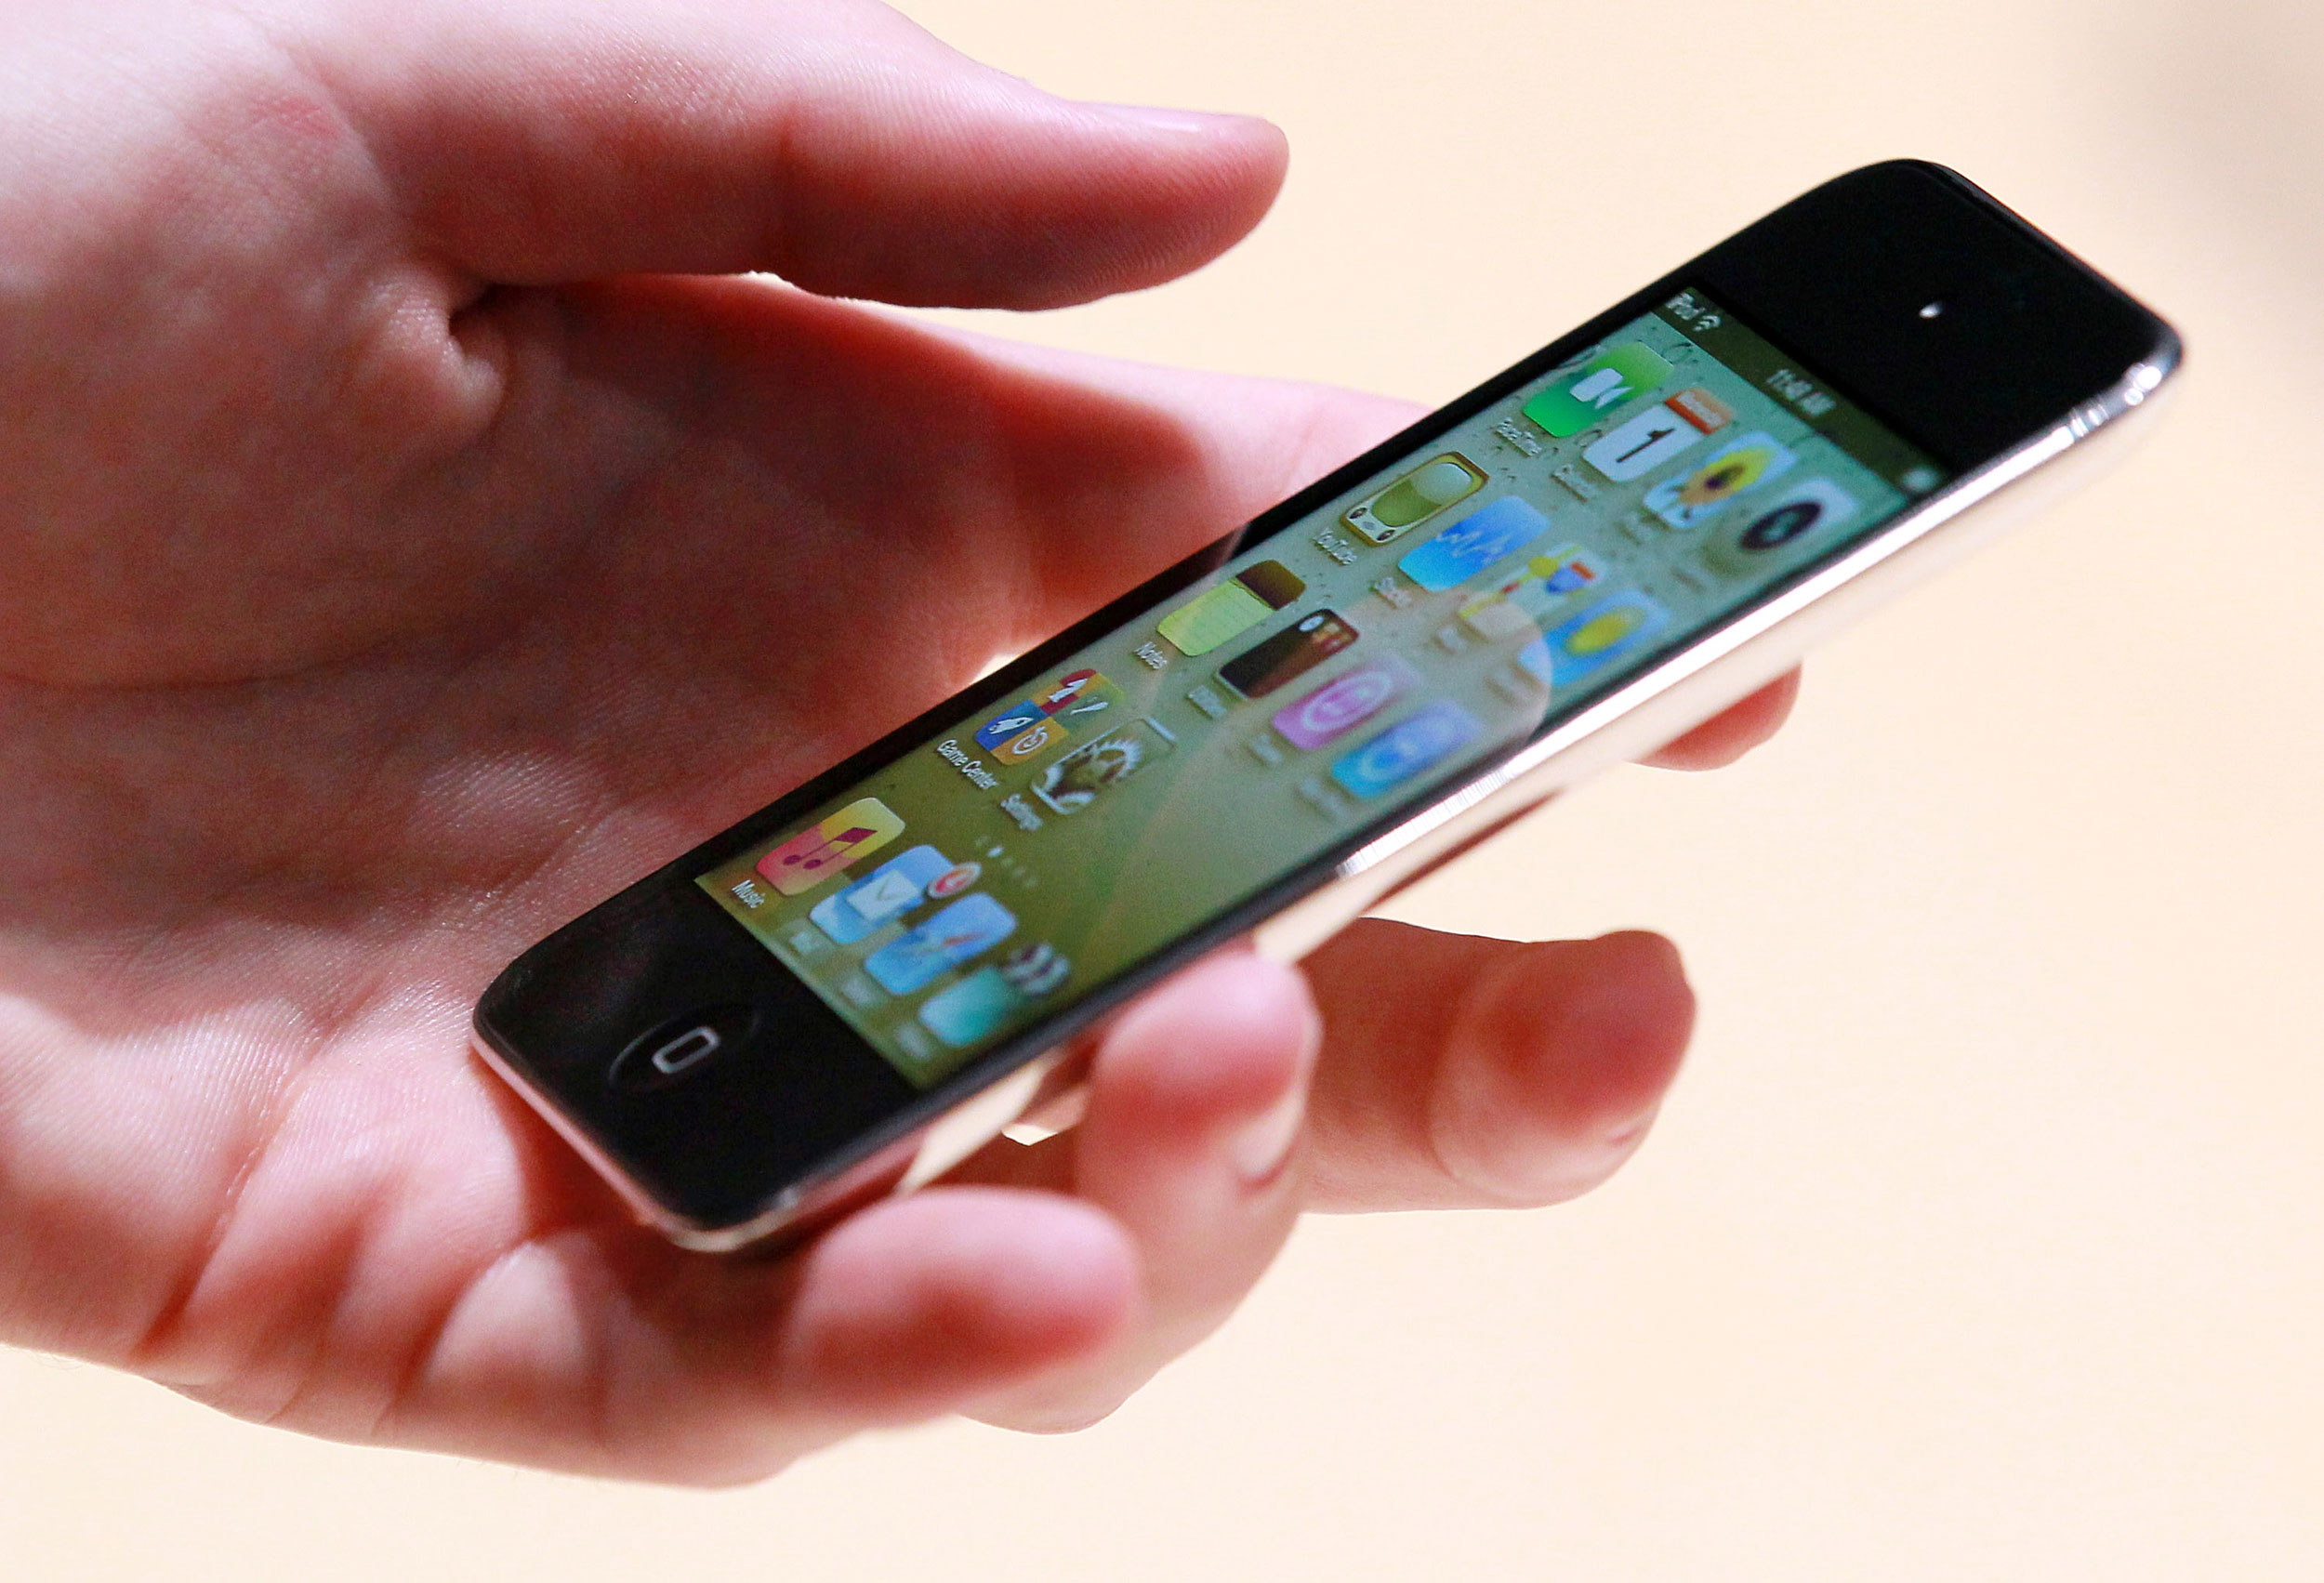 Adiós al iPod!: Apple descontinua el iPod Touch, el icónico